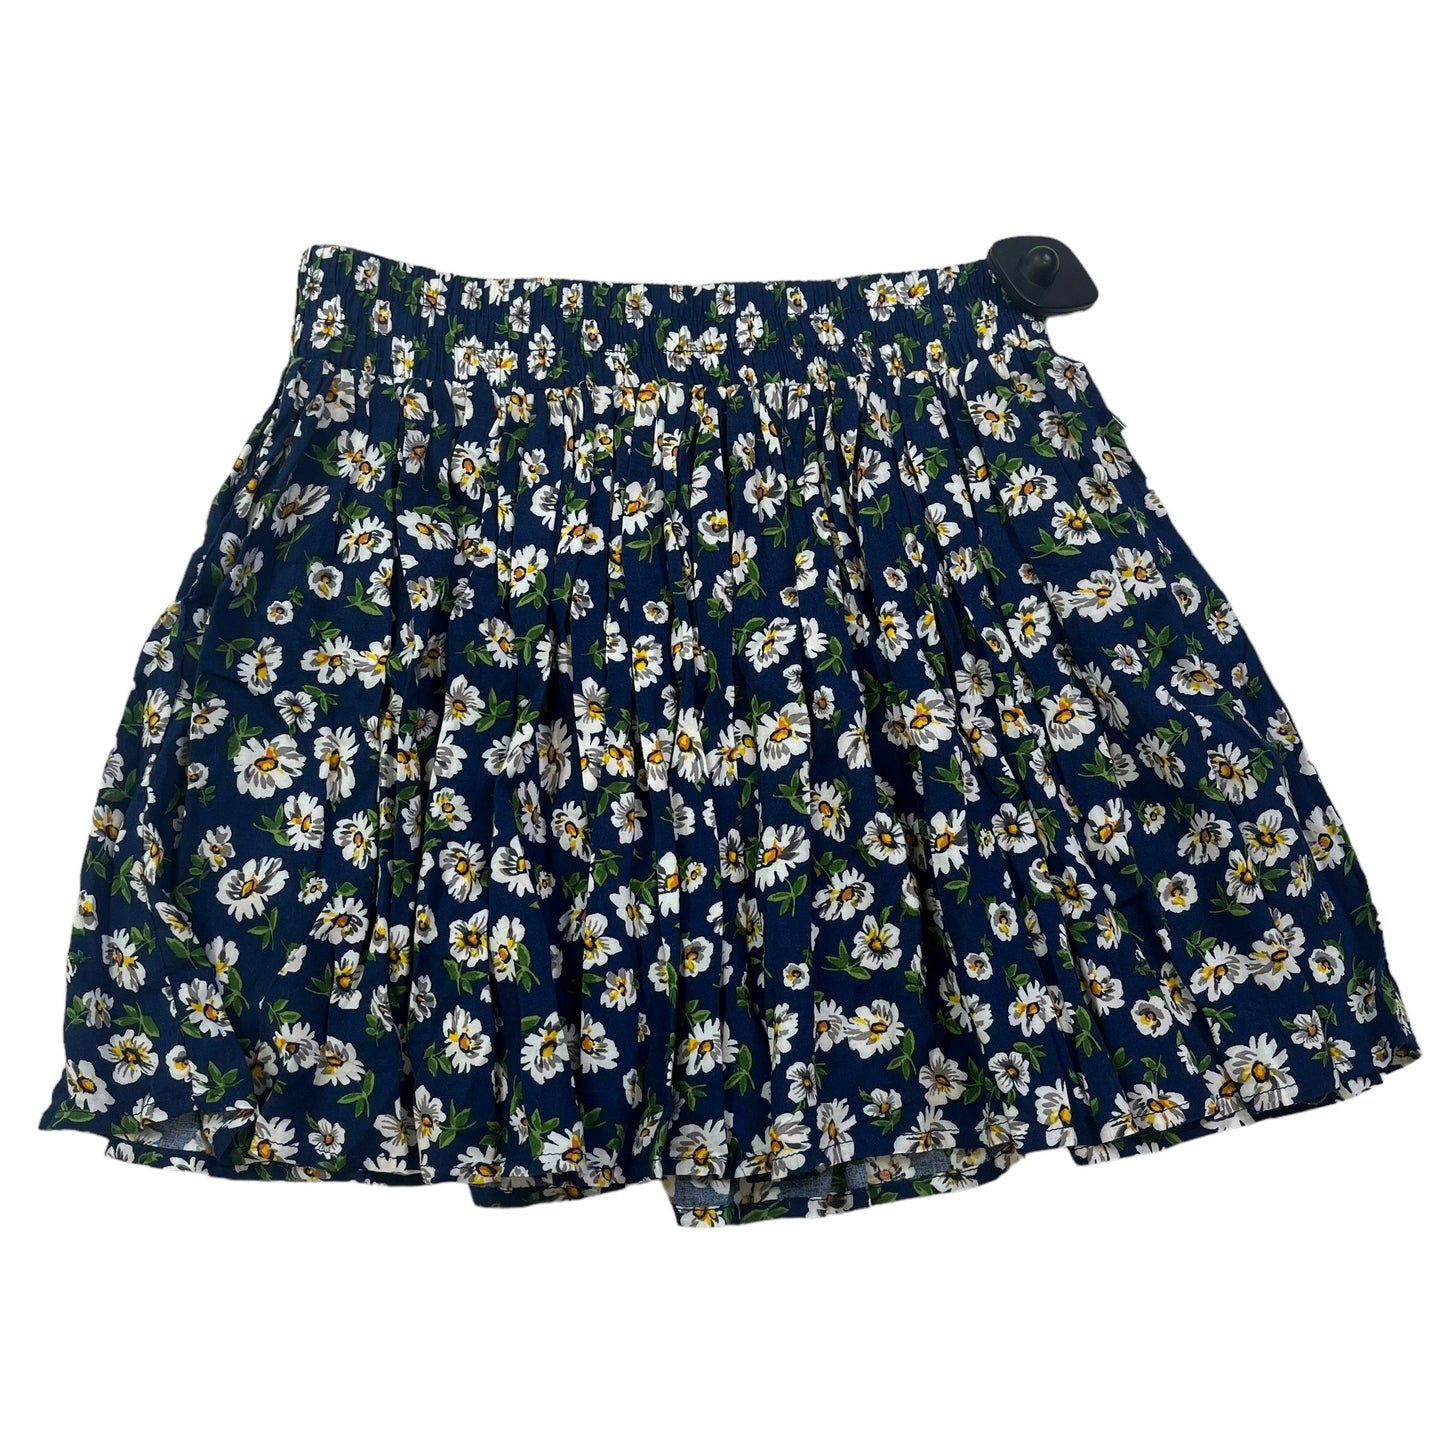 Blue Skirt Mini & Short Forever 21, Size Xs